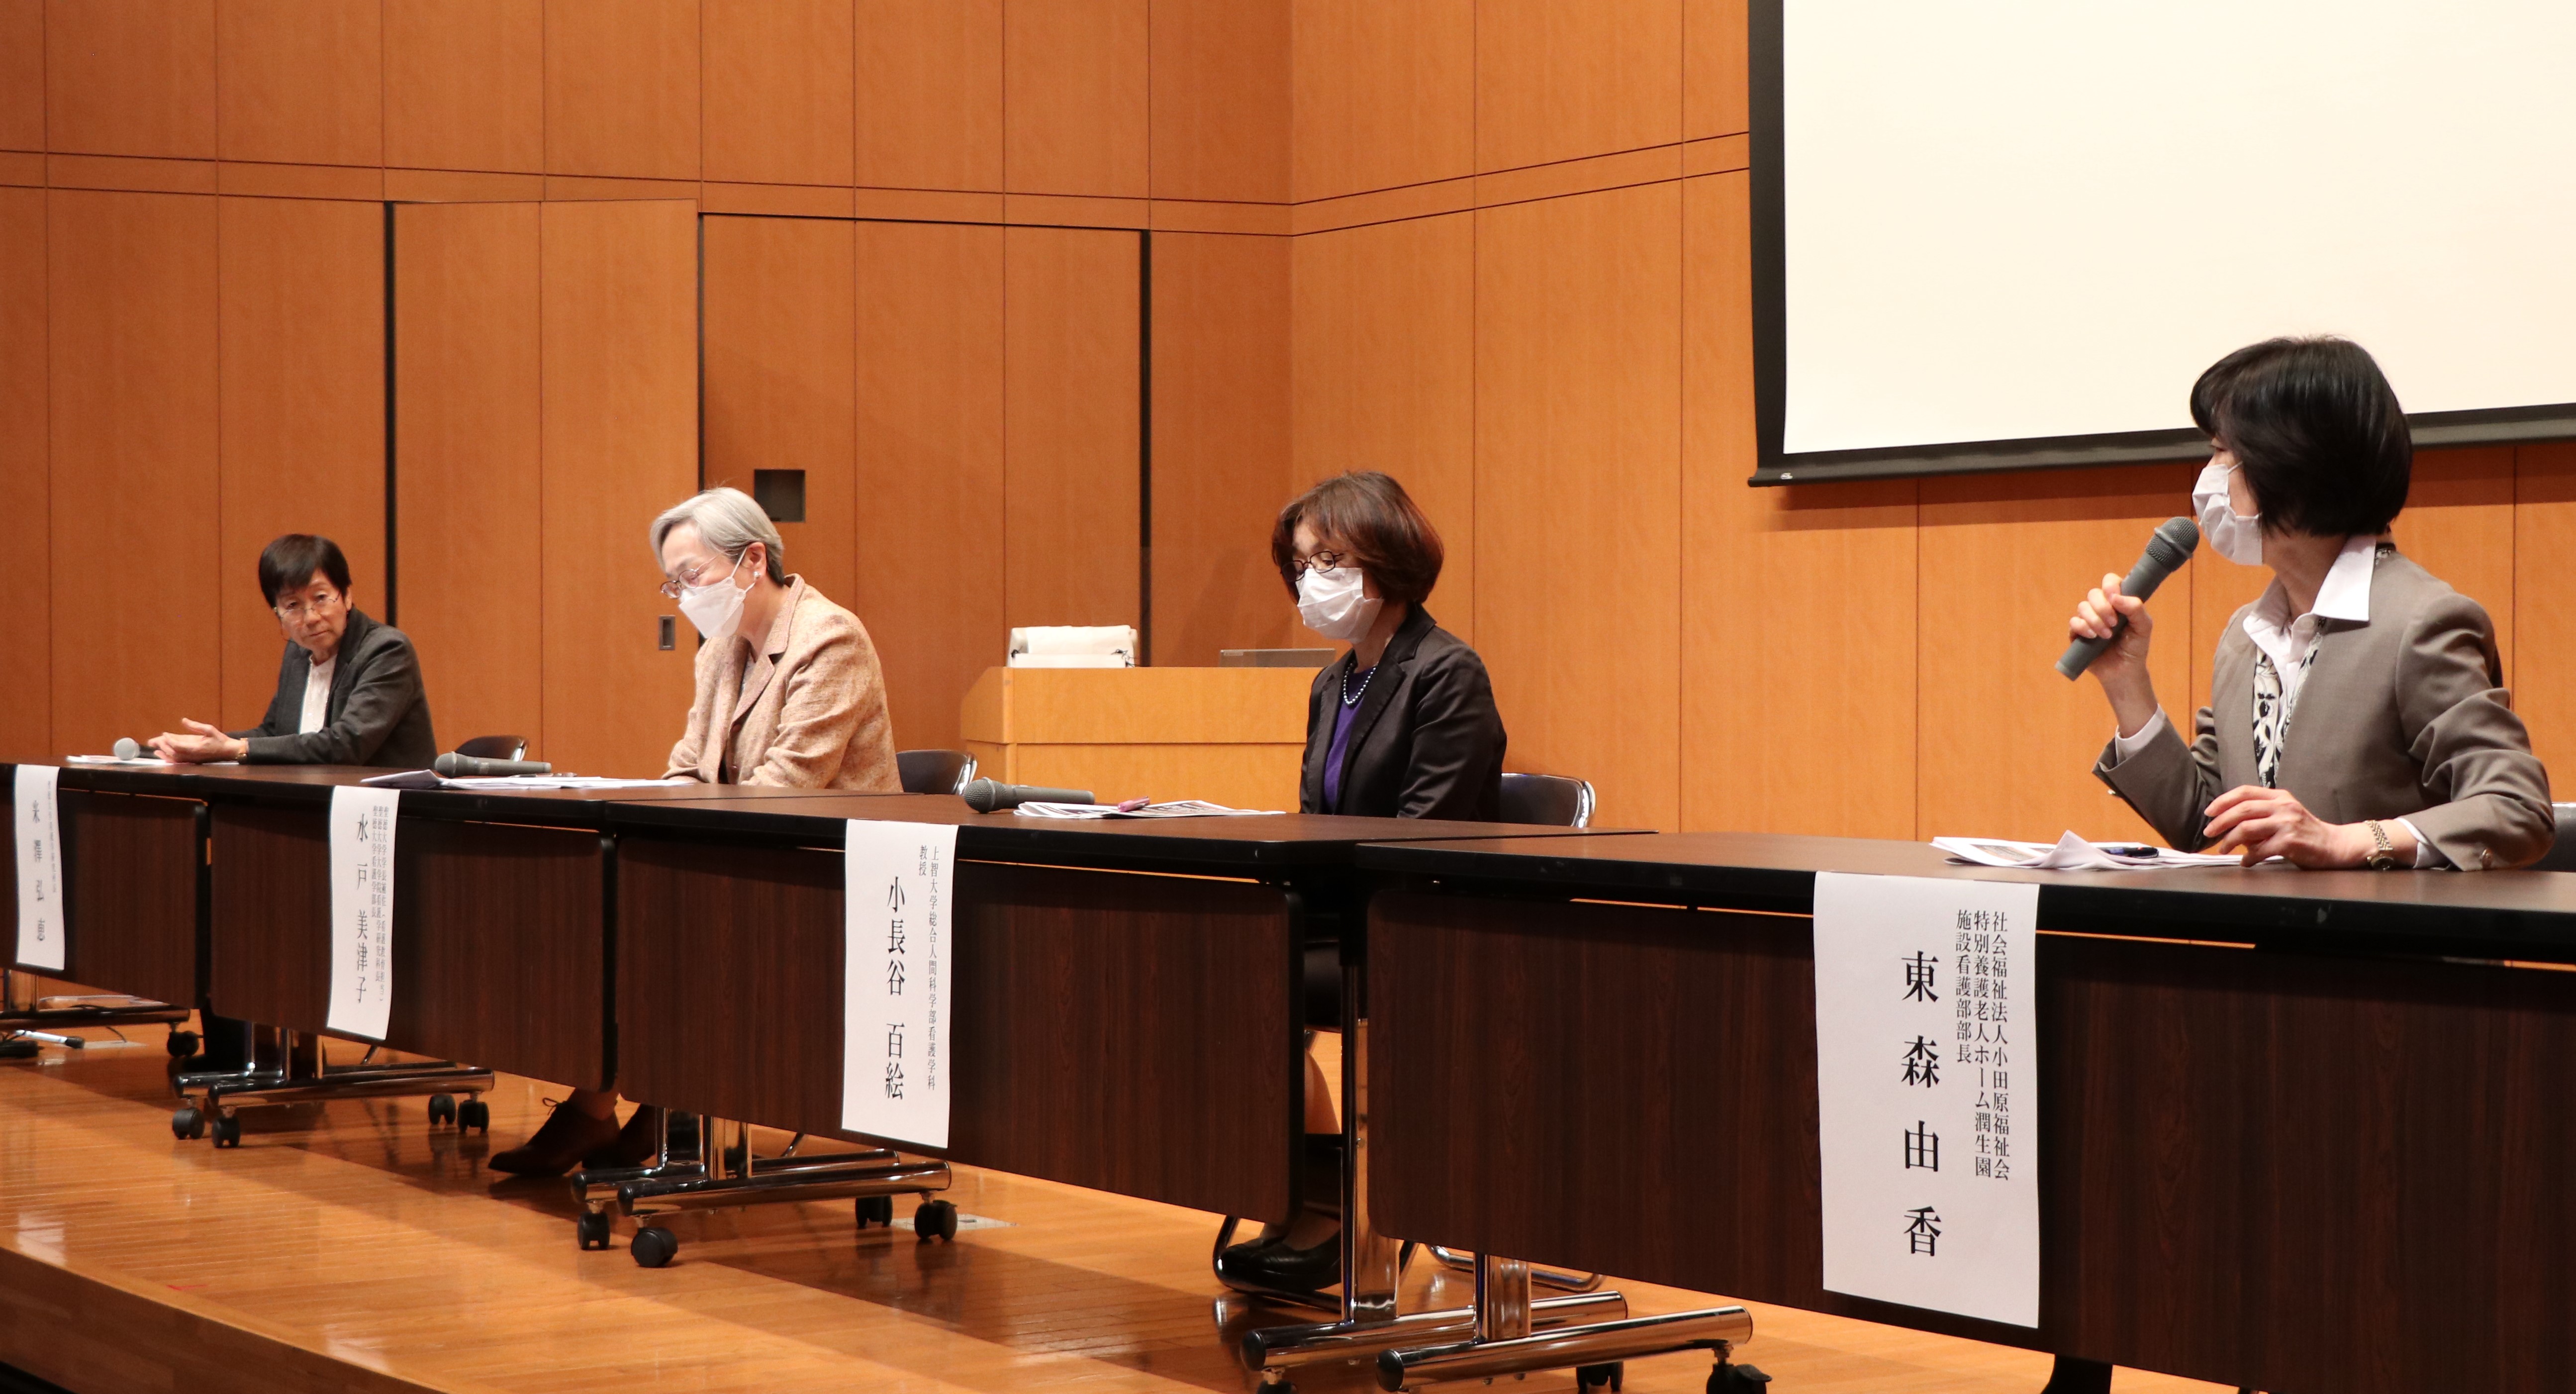 　聖徳大学看護学研究所・上智大学生命倫理研究所共催のシンポジウムを開催しました！